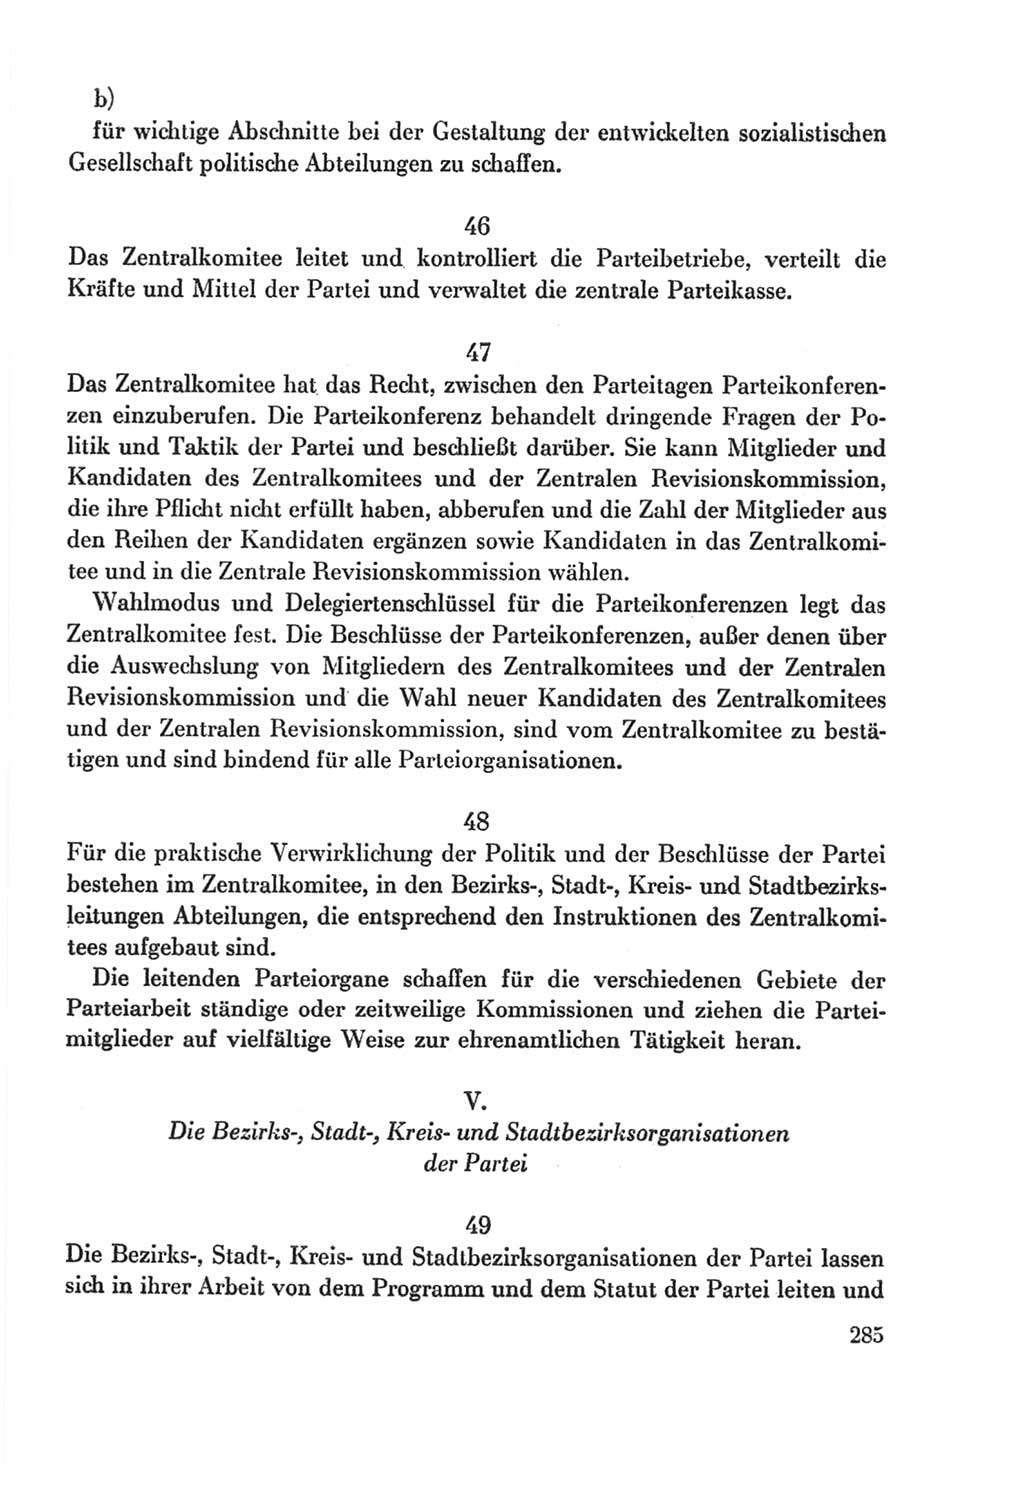 Protokoll der Verhandlungen des Ⅸ. Parteitages der Sozialistischen Einheitspartei Deutschlands (SED) [Deutsche Demokratische Republik (DDR)] 1976, Band 2, Seite 285 (Prot. Verh. Ⅸ. PT SED DDR 1976, Bd. 2, S. 285)